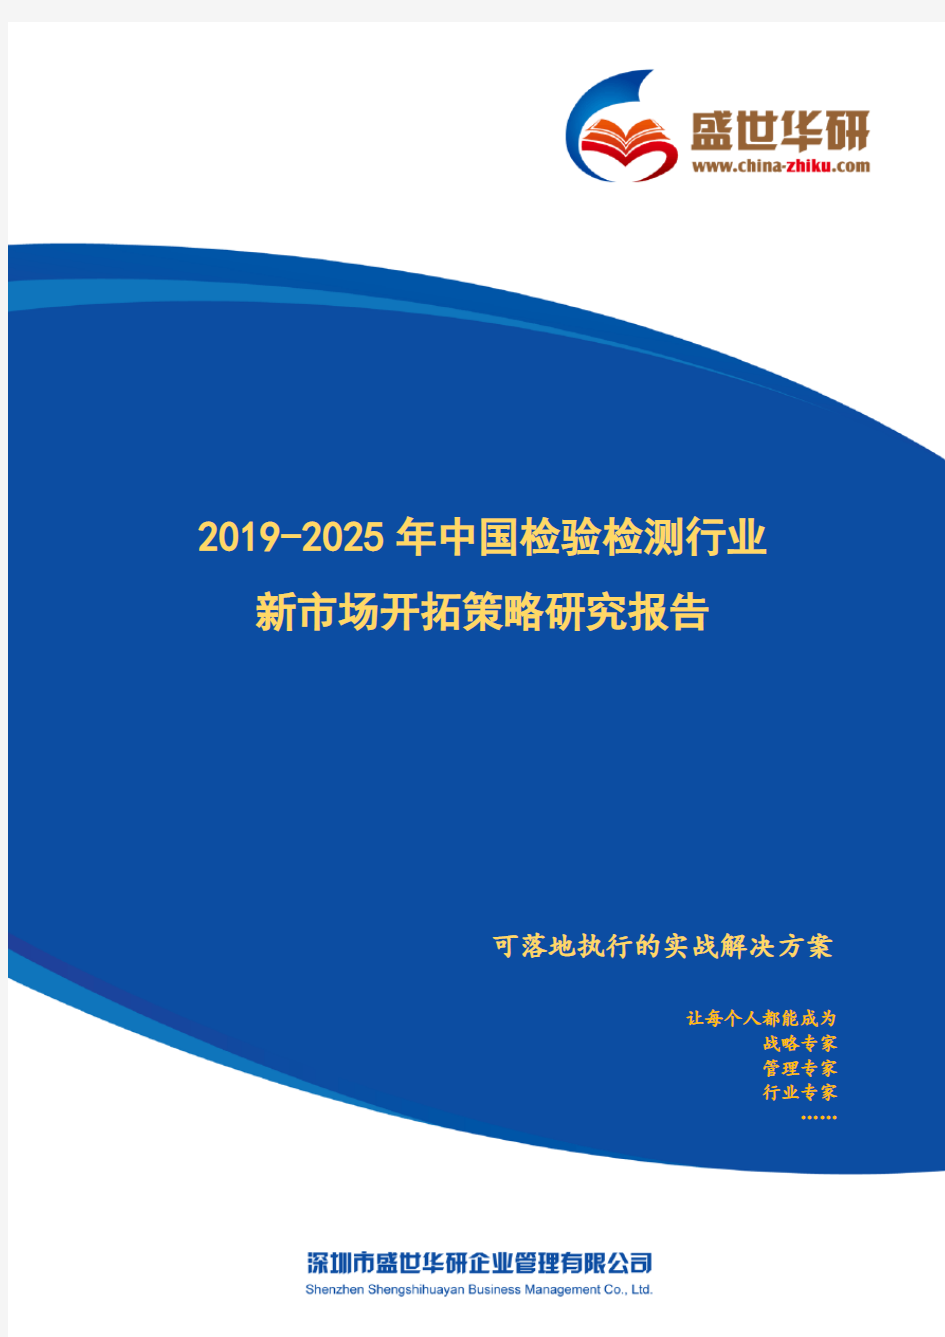 【完整版】2019-2025年中国检验检测行业新市场开拓策略研究报告